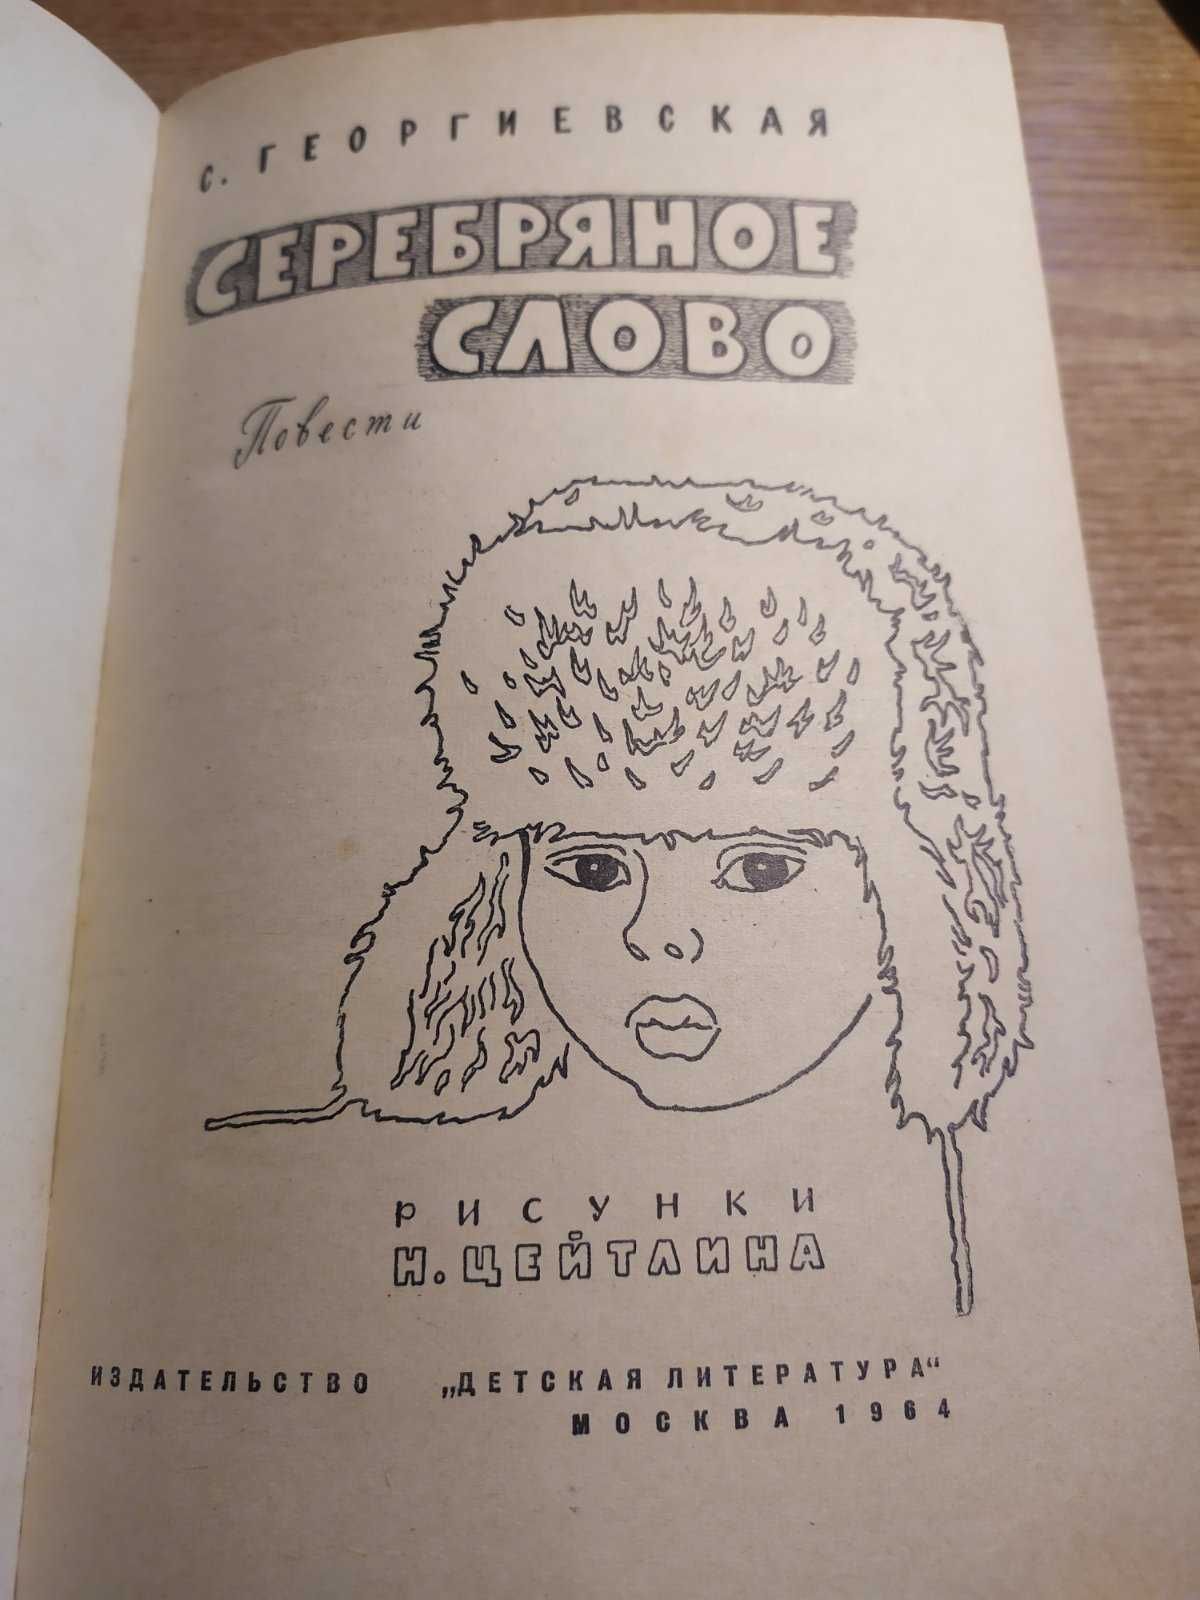 "Серебряное слово" Георгиевская С. 1964 г.